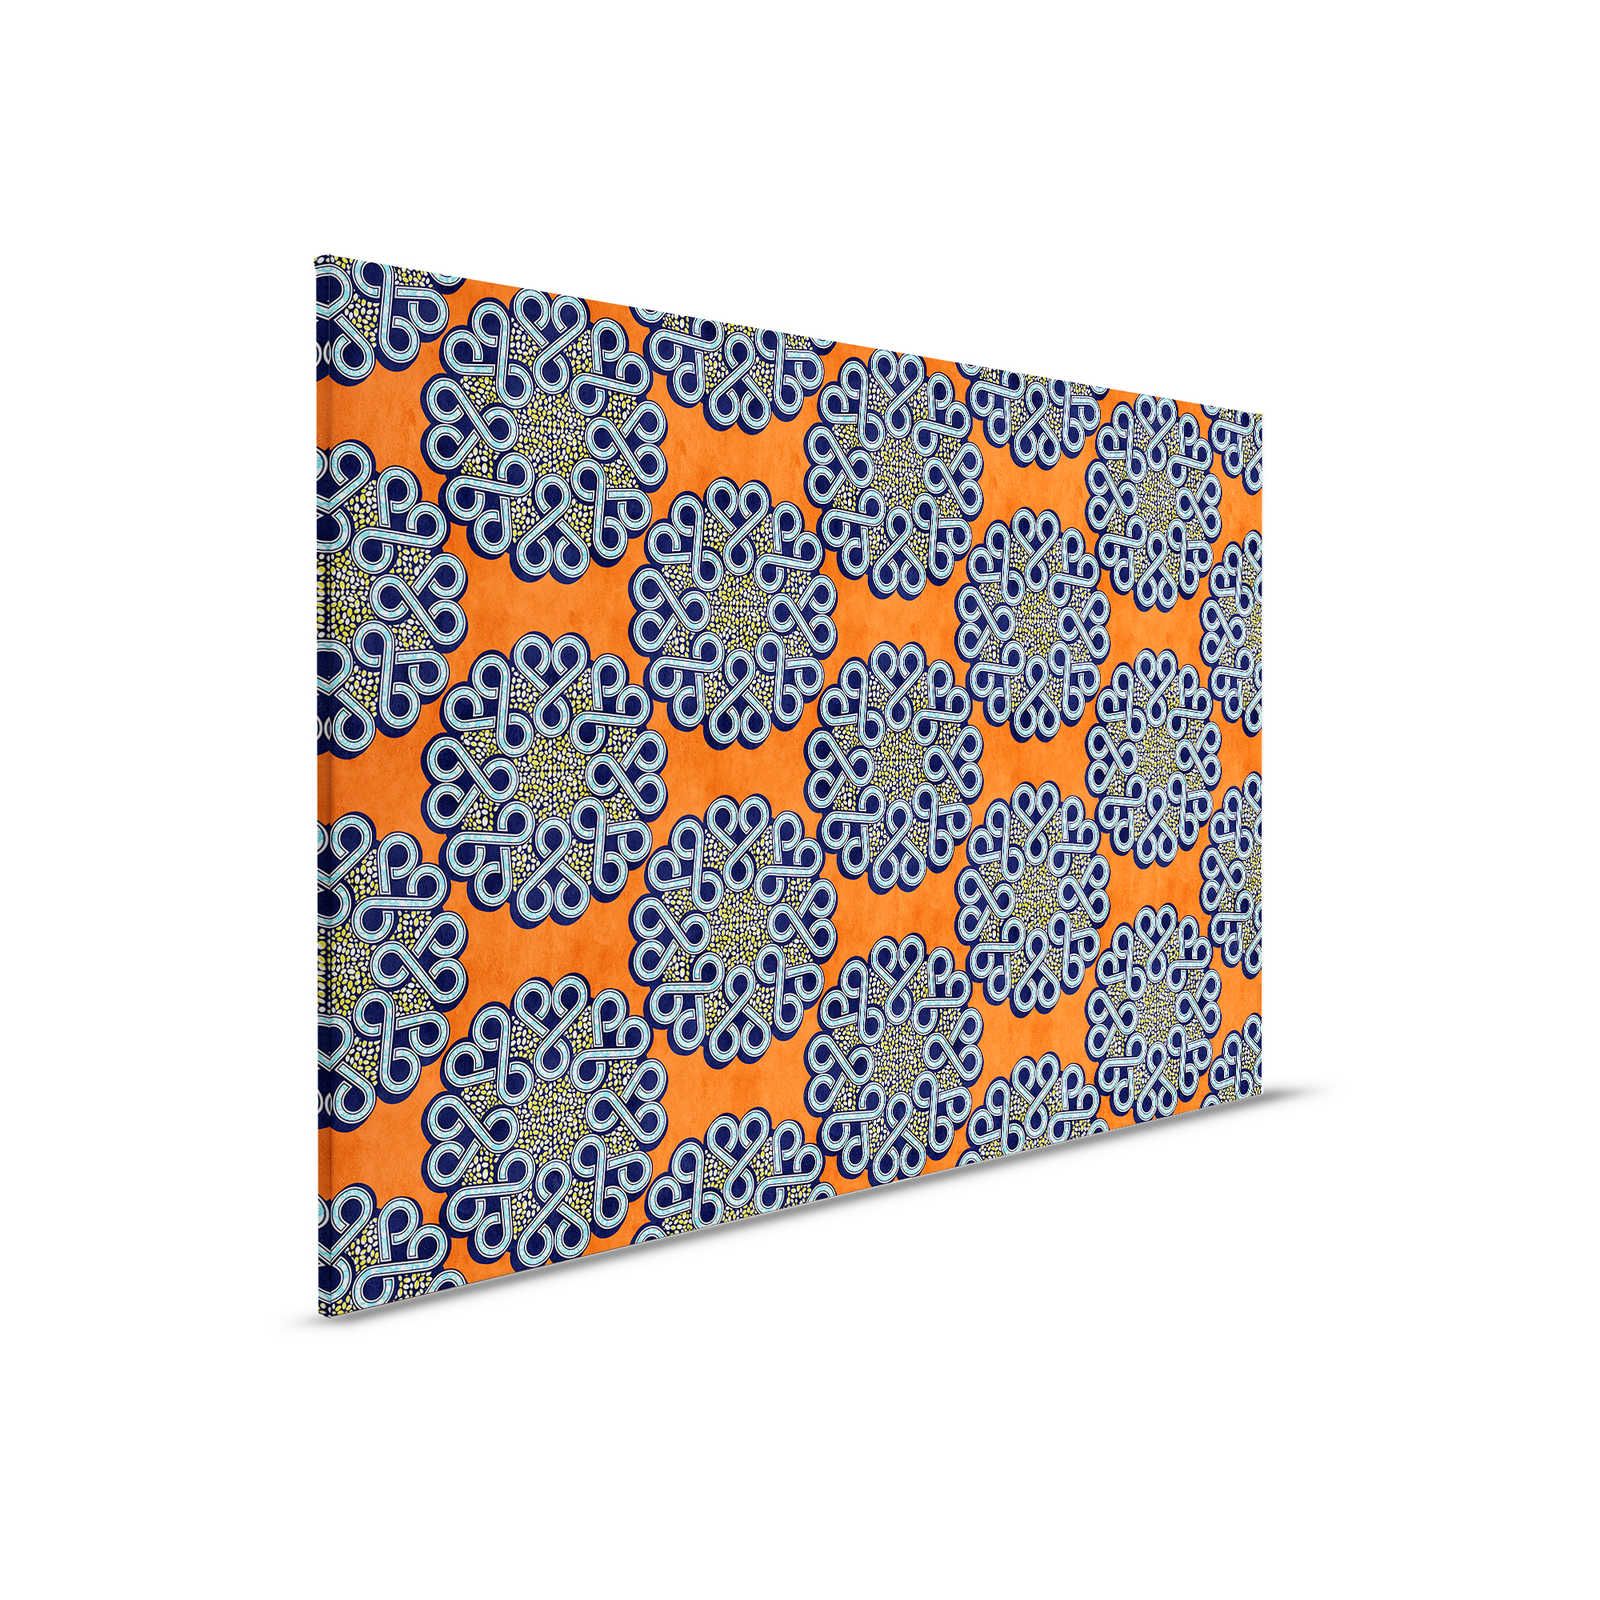 Dakar 2 - Toile africaine tissu de cire motif orange, bleu - 0,90 m x 0,60 m
